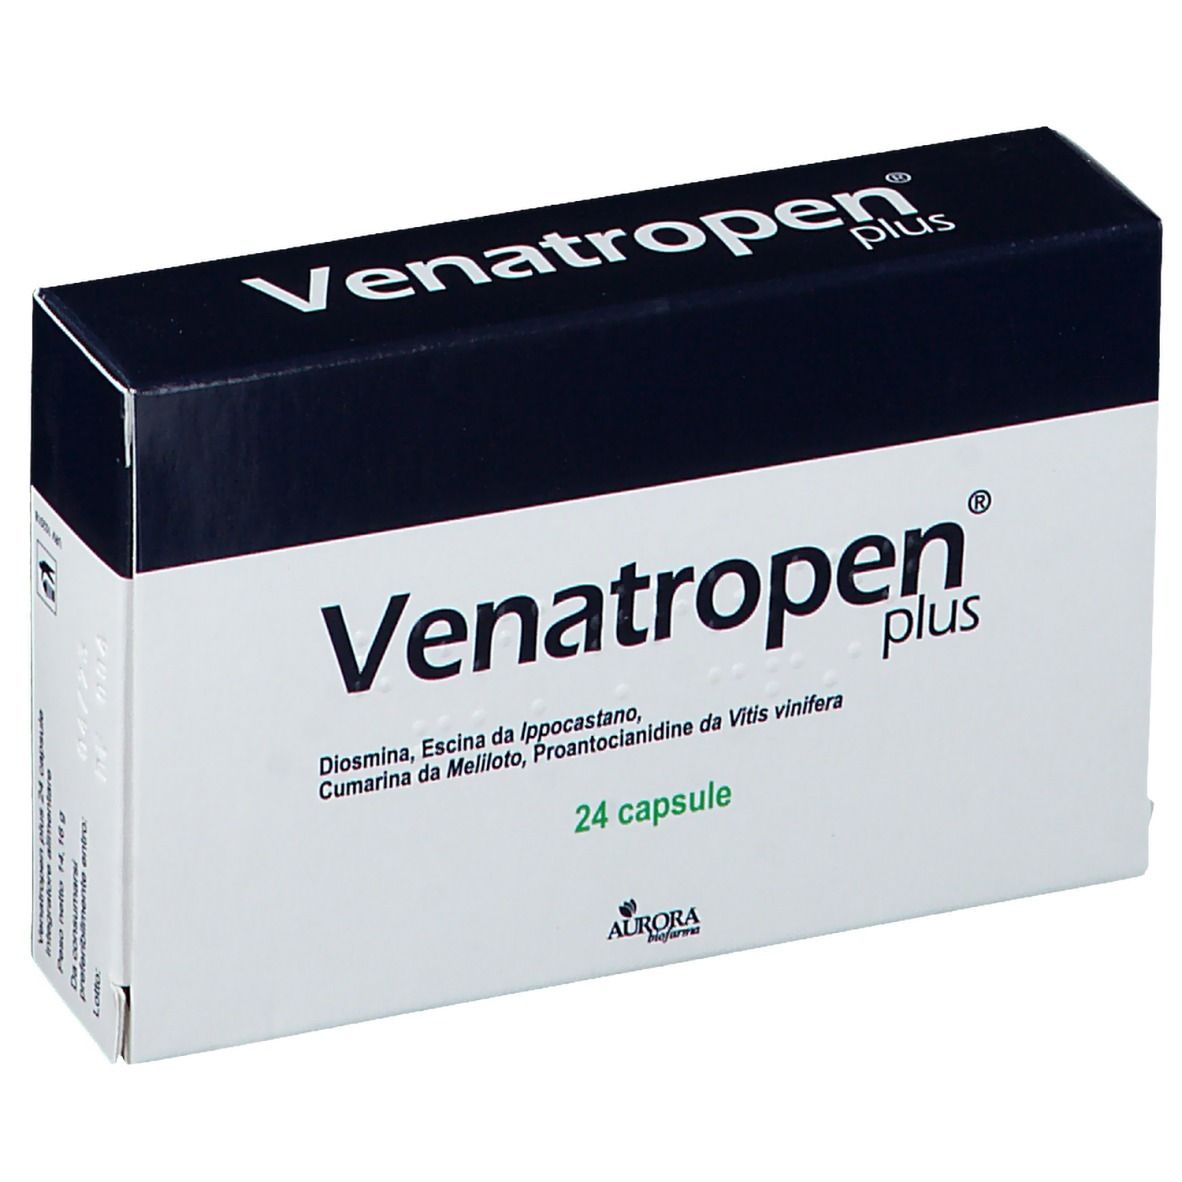 Venatropen® plus